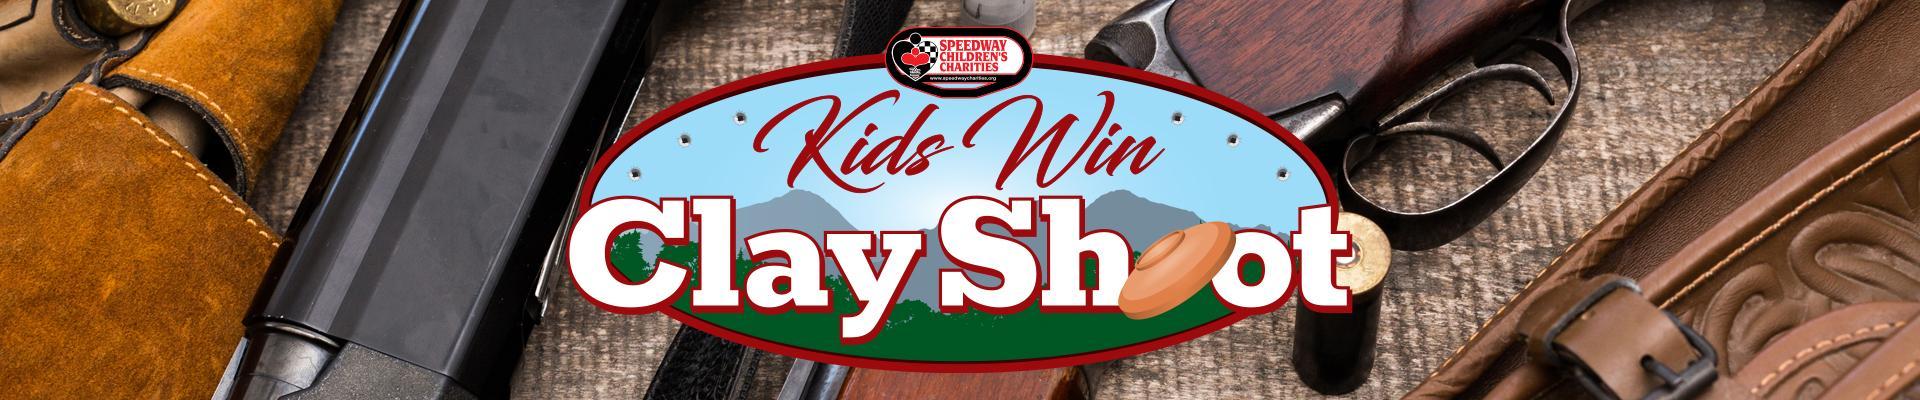 Kids Win Clay Shoot Registration Header